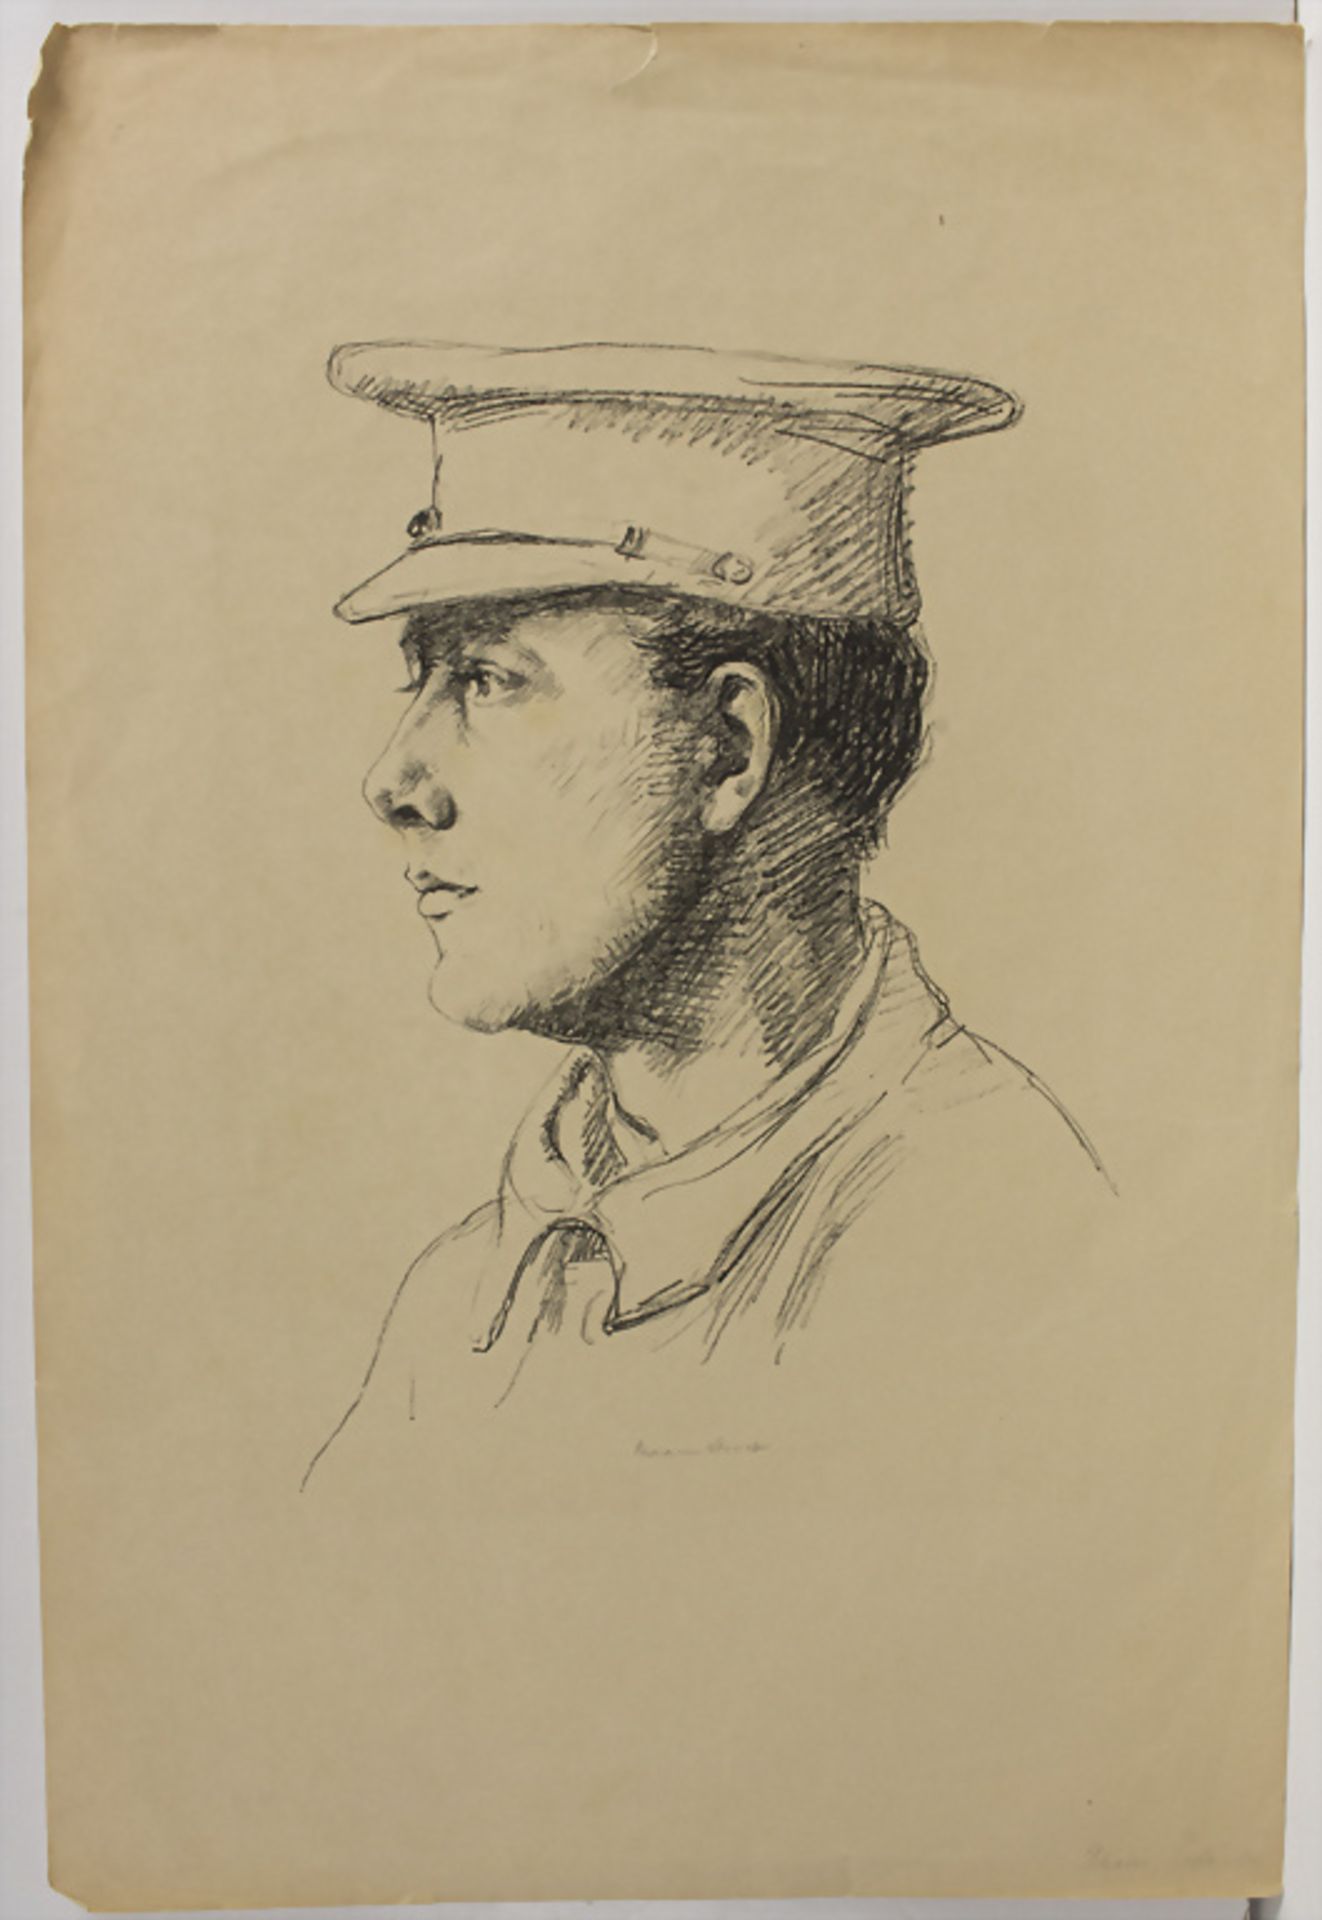 Hermann Struck (1876-1944), 'Roter Engländer' / 'Red English soldier', 20 Jh. - Bild 2 aus 4